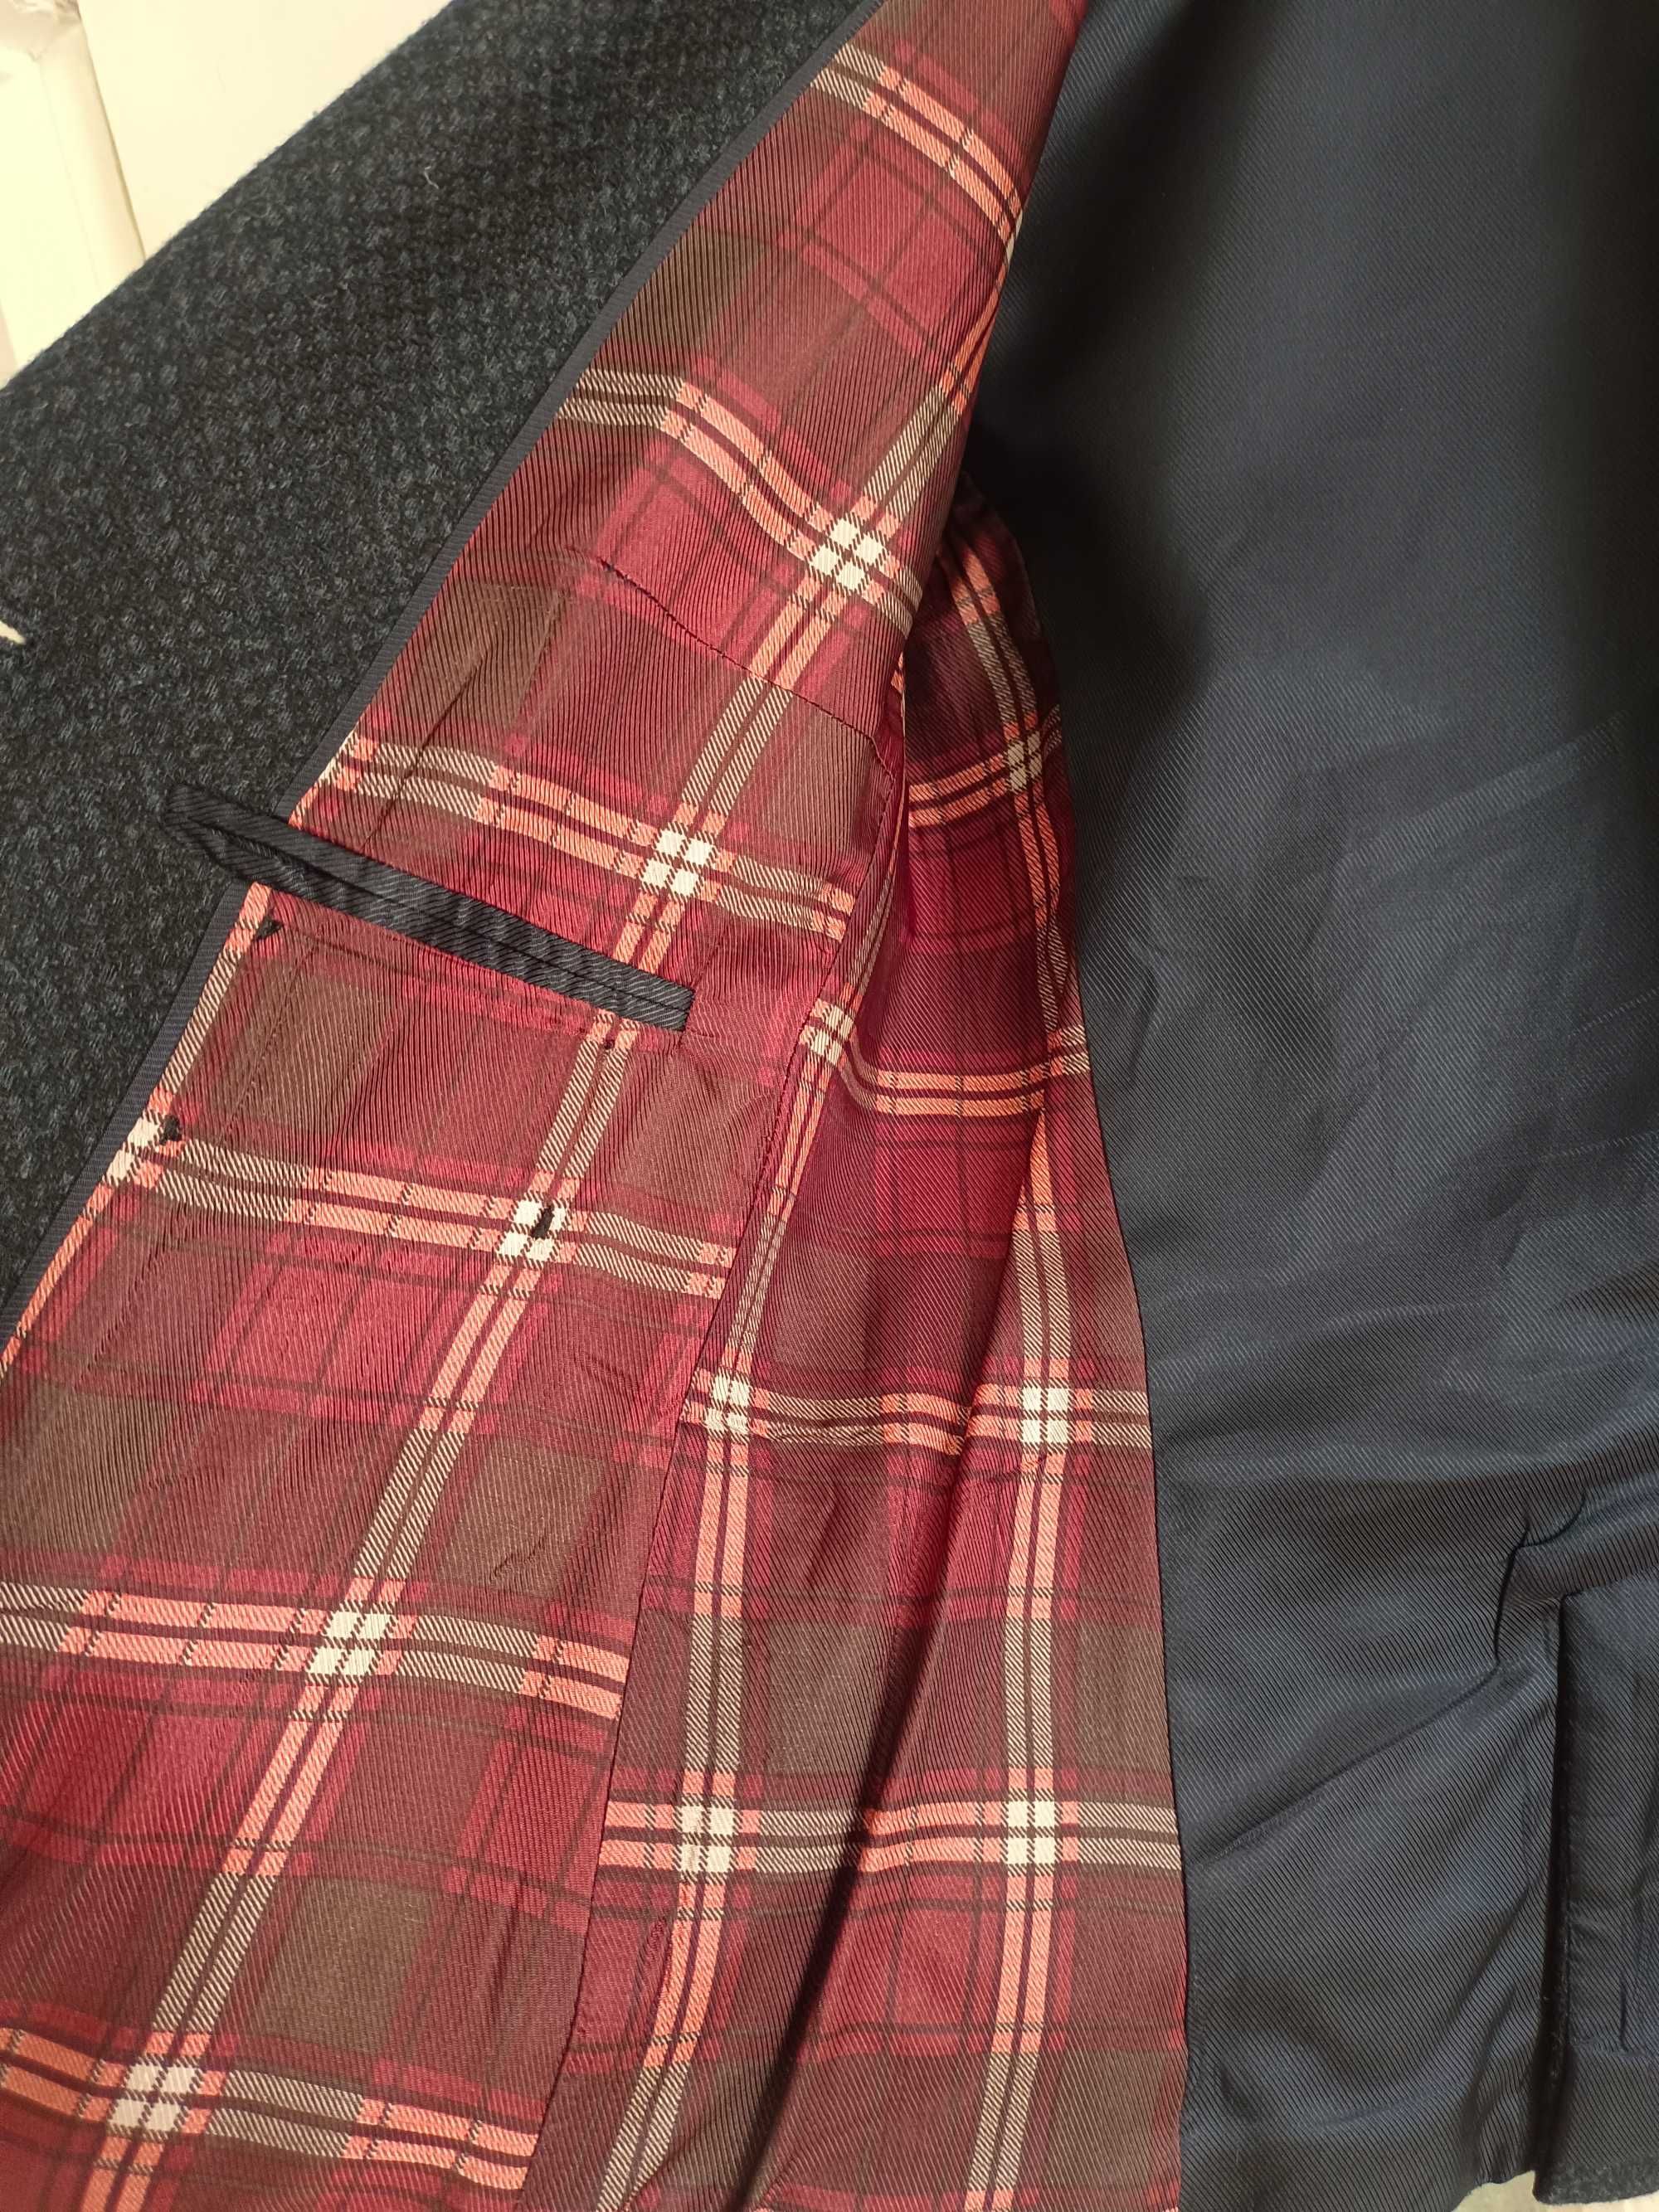 Пиджаки Massimo Dutti and Zara, куртка S'Oliver.